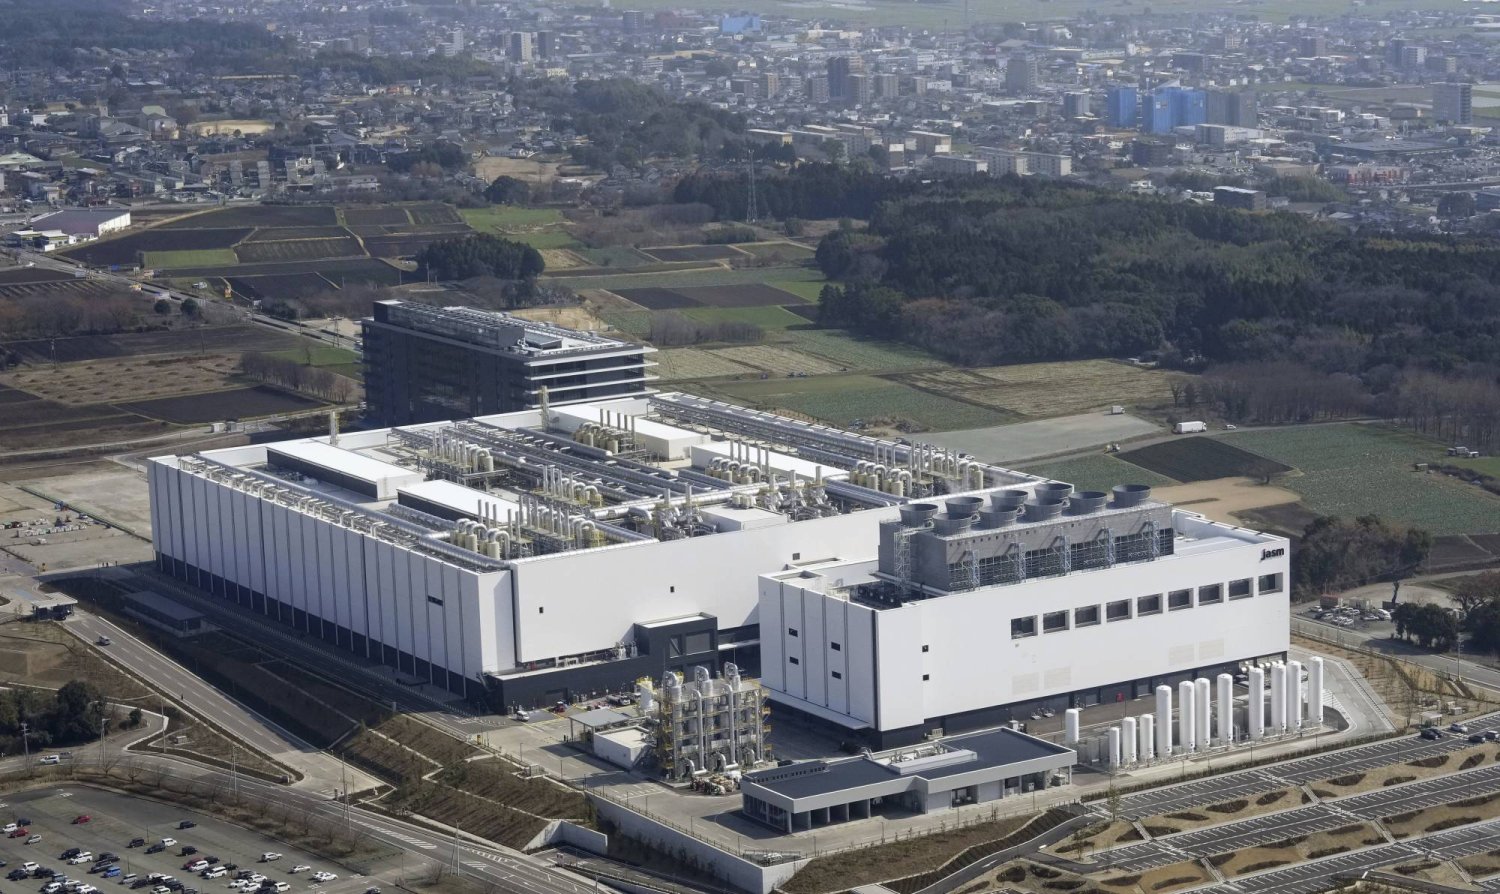 المصنع الذي بنته شركة «تي إس إم سي» حديثاً في بلدة كيكويو إحدى ضواحي كوماموتو جنوب غربي اليابان (أ.ب)